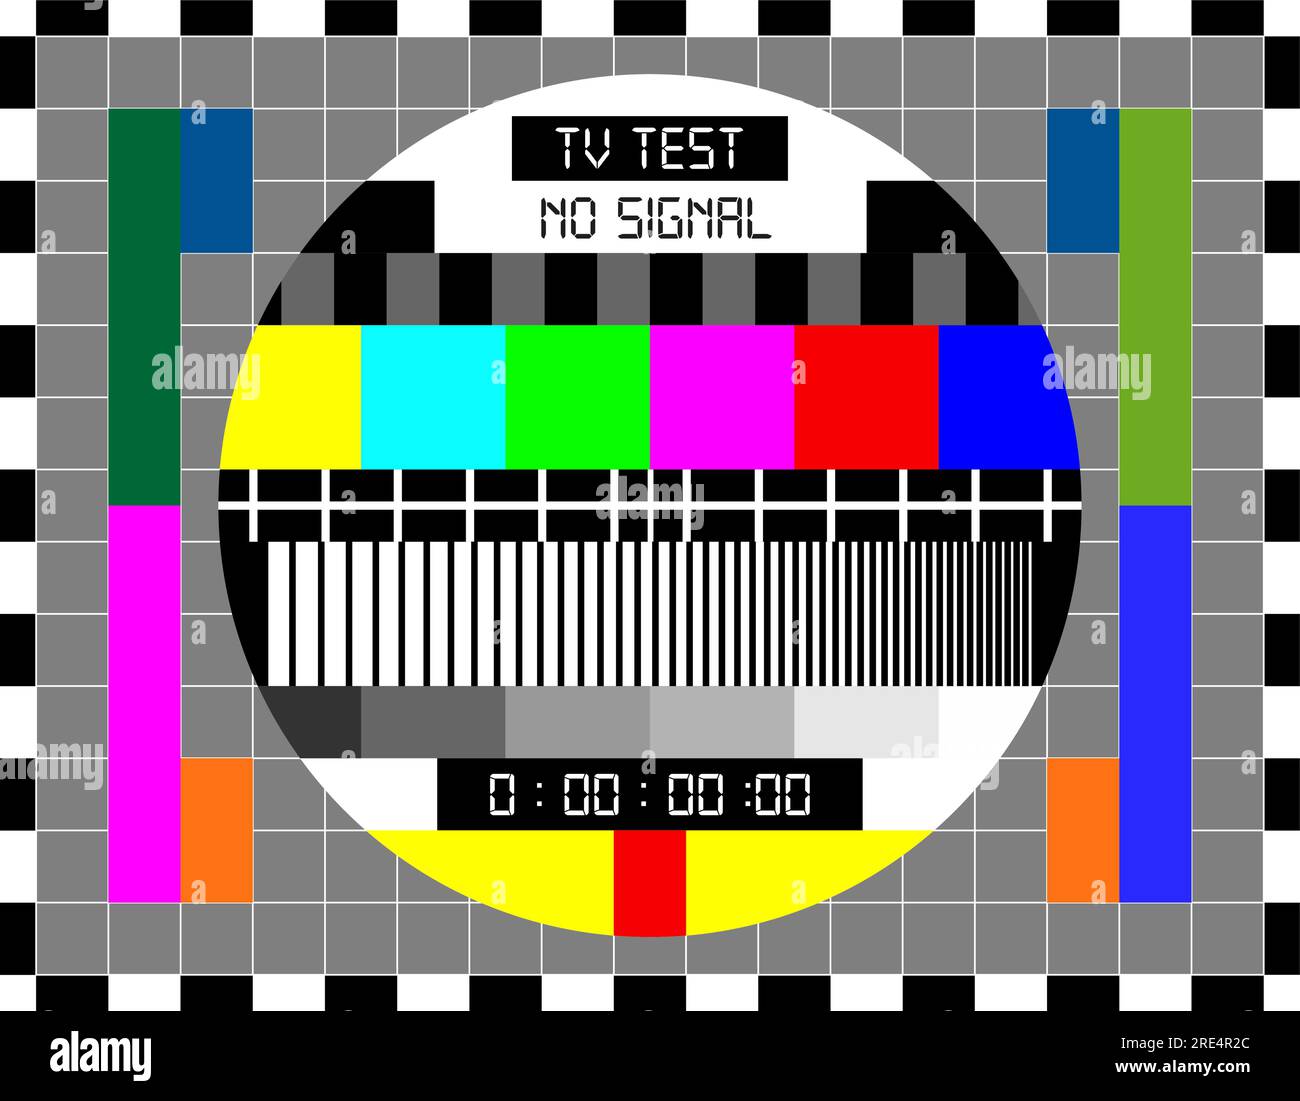 TV-Signal-Testbildschirm für Retro-TV-Übertragungstechnologien. Vektortestkartenmuster mit kalibrierten Farbbalken, Graustufen und Raster in schwarzem und weißem Rahmen. Hintergrund der alten TV-Testkarte Stock Vektor